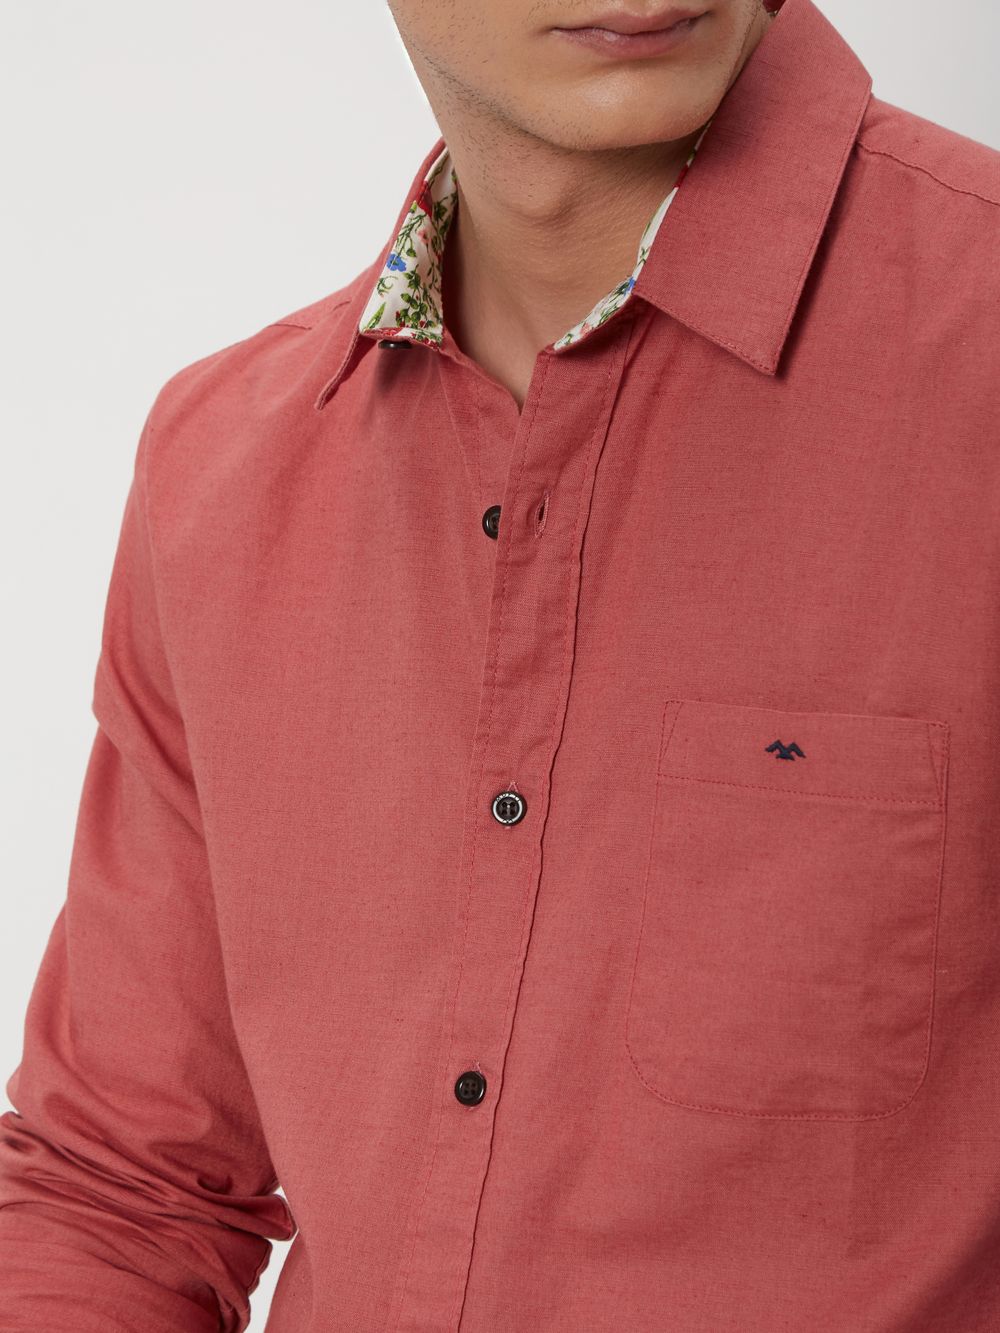 Pink Cotton Linen Plain Shirt